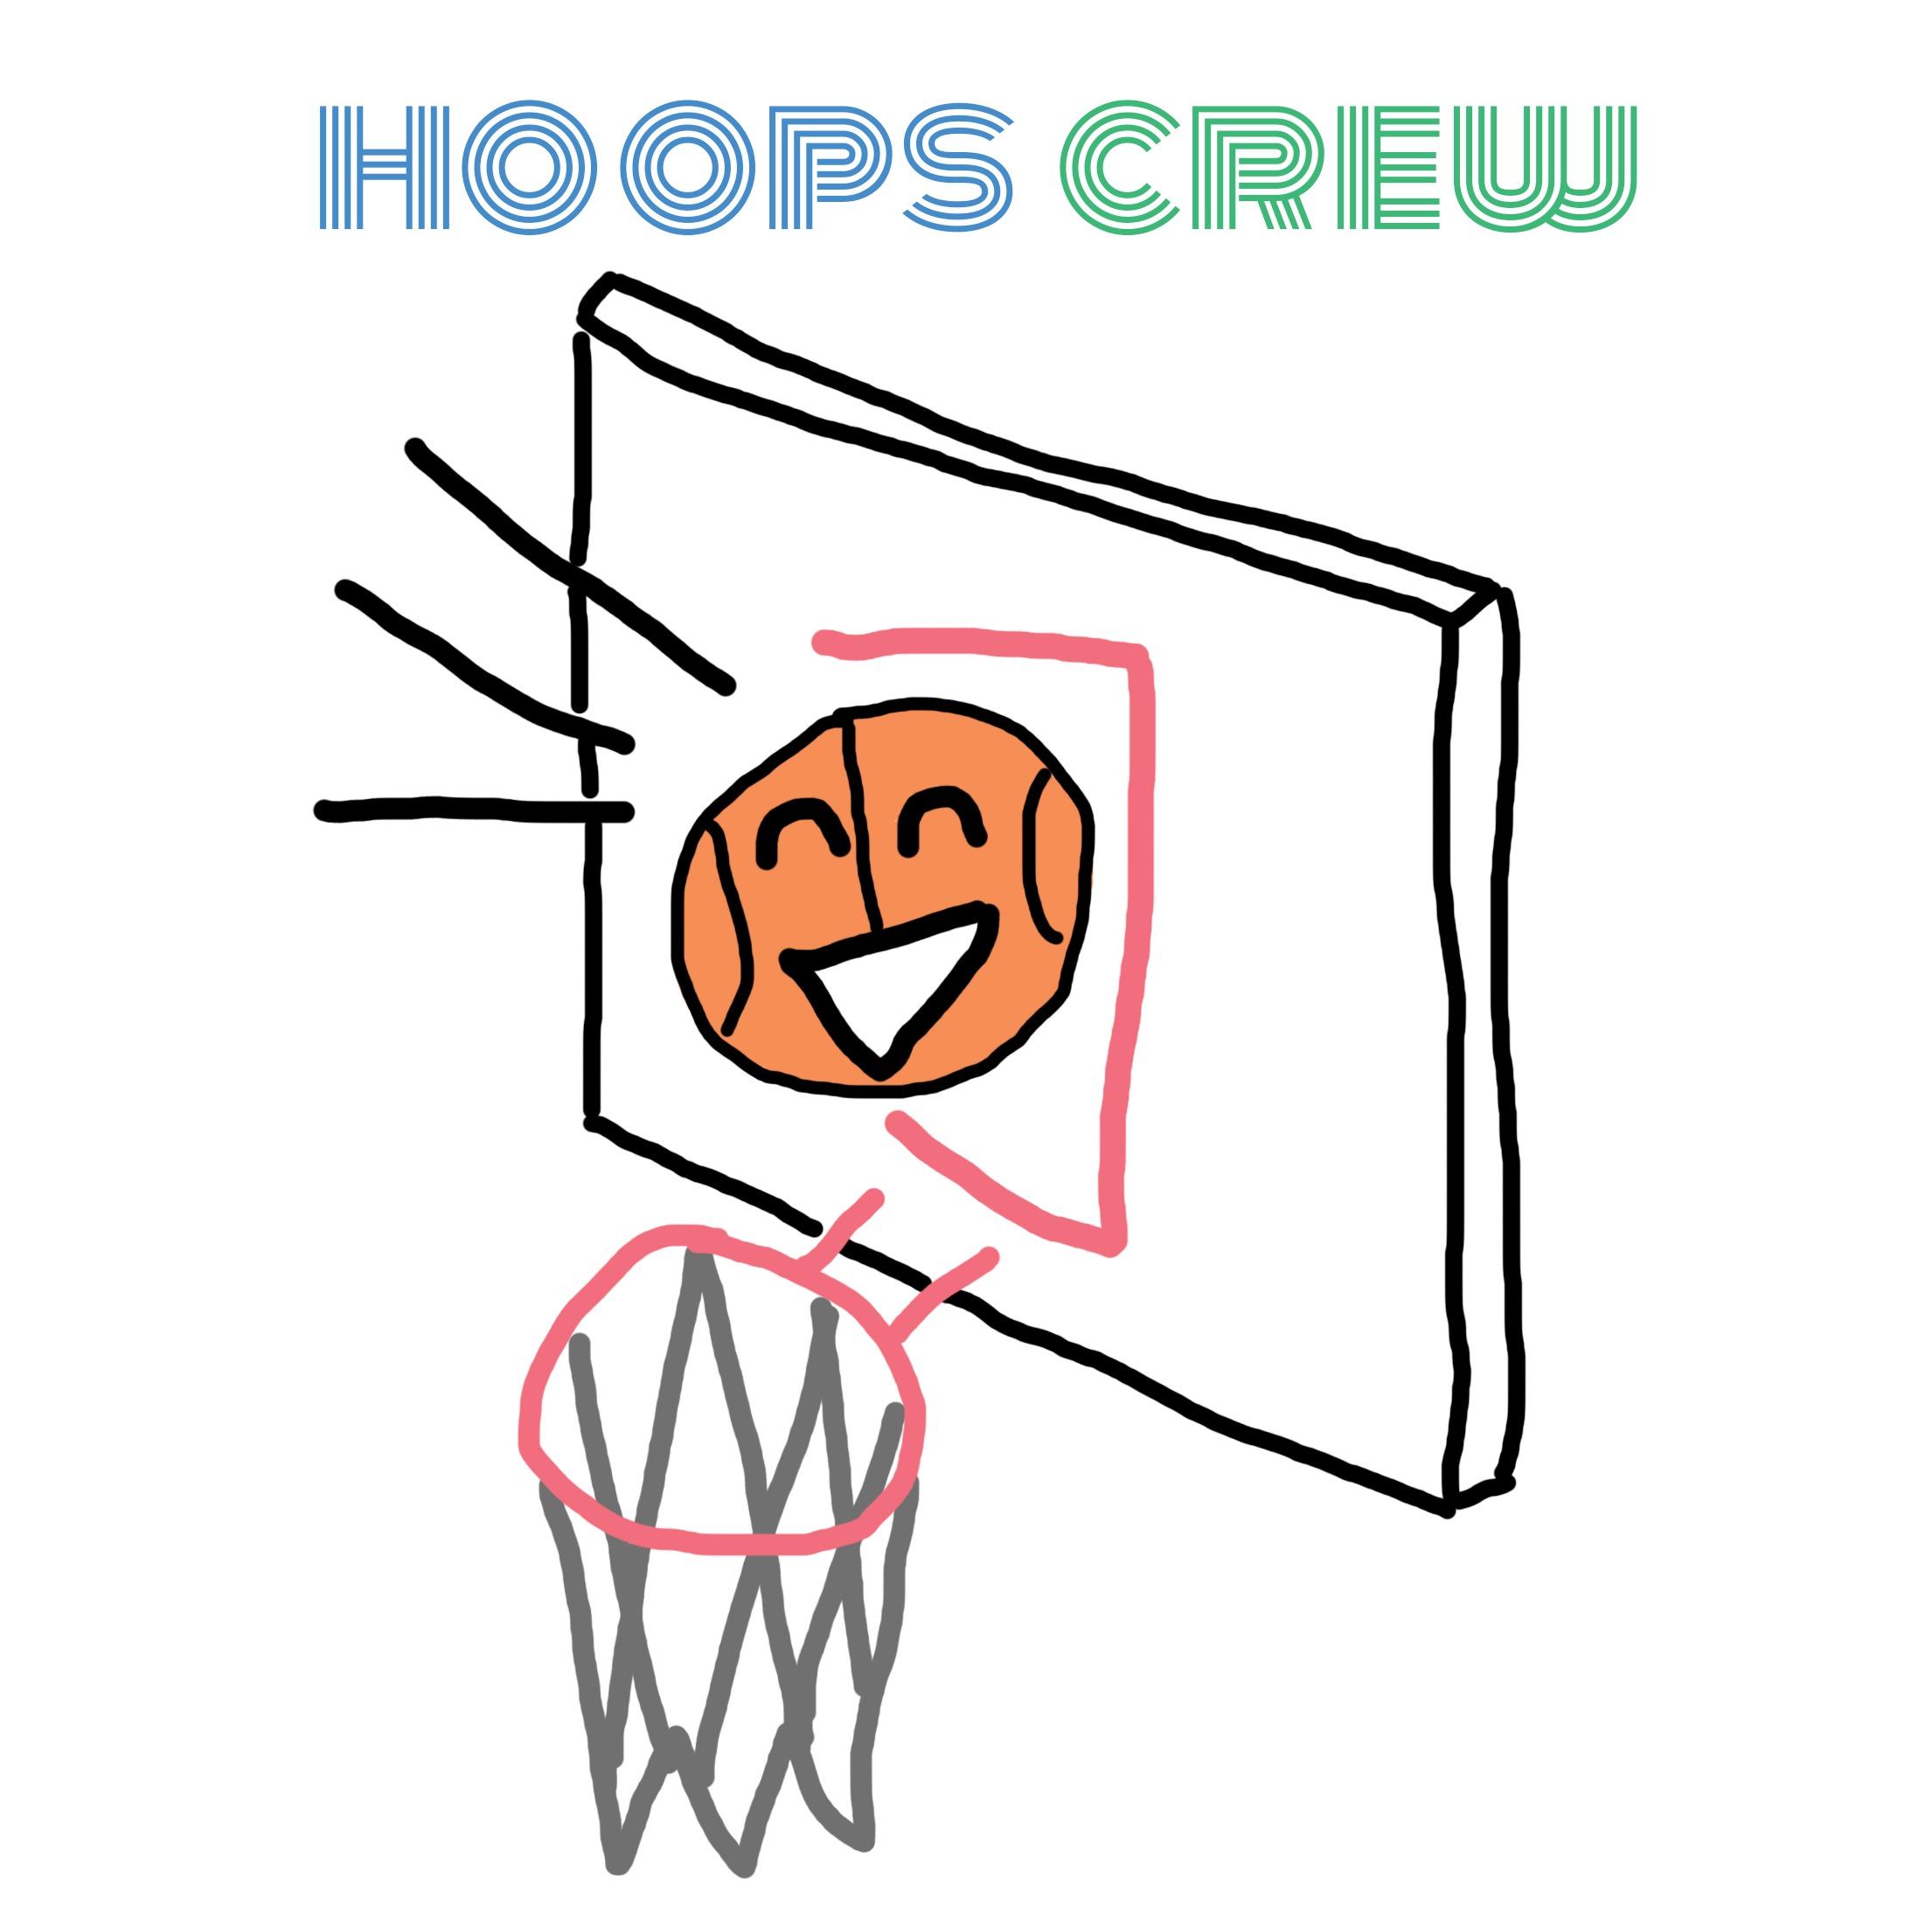 hoops crew